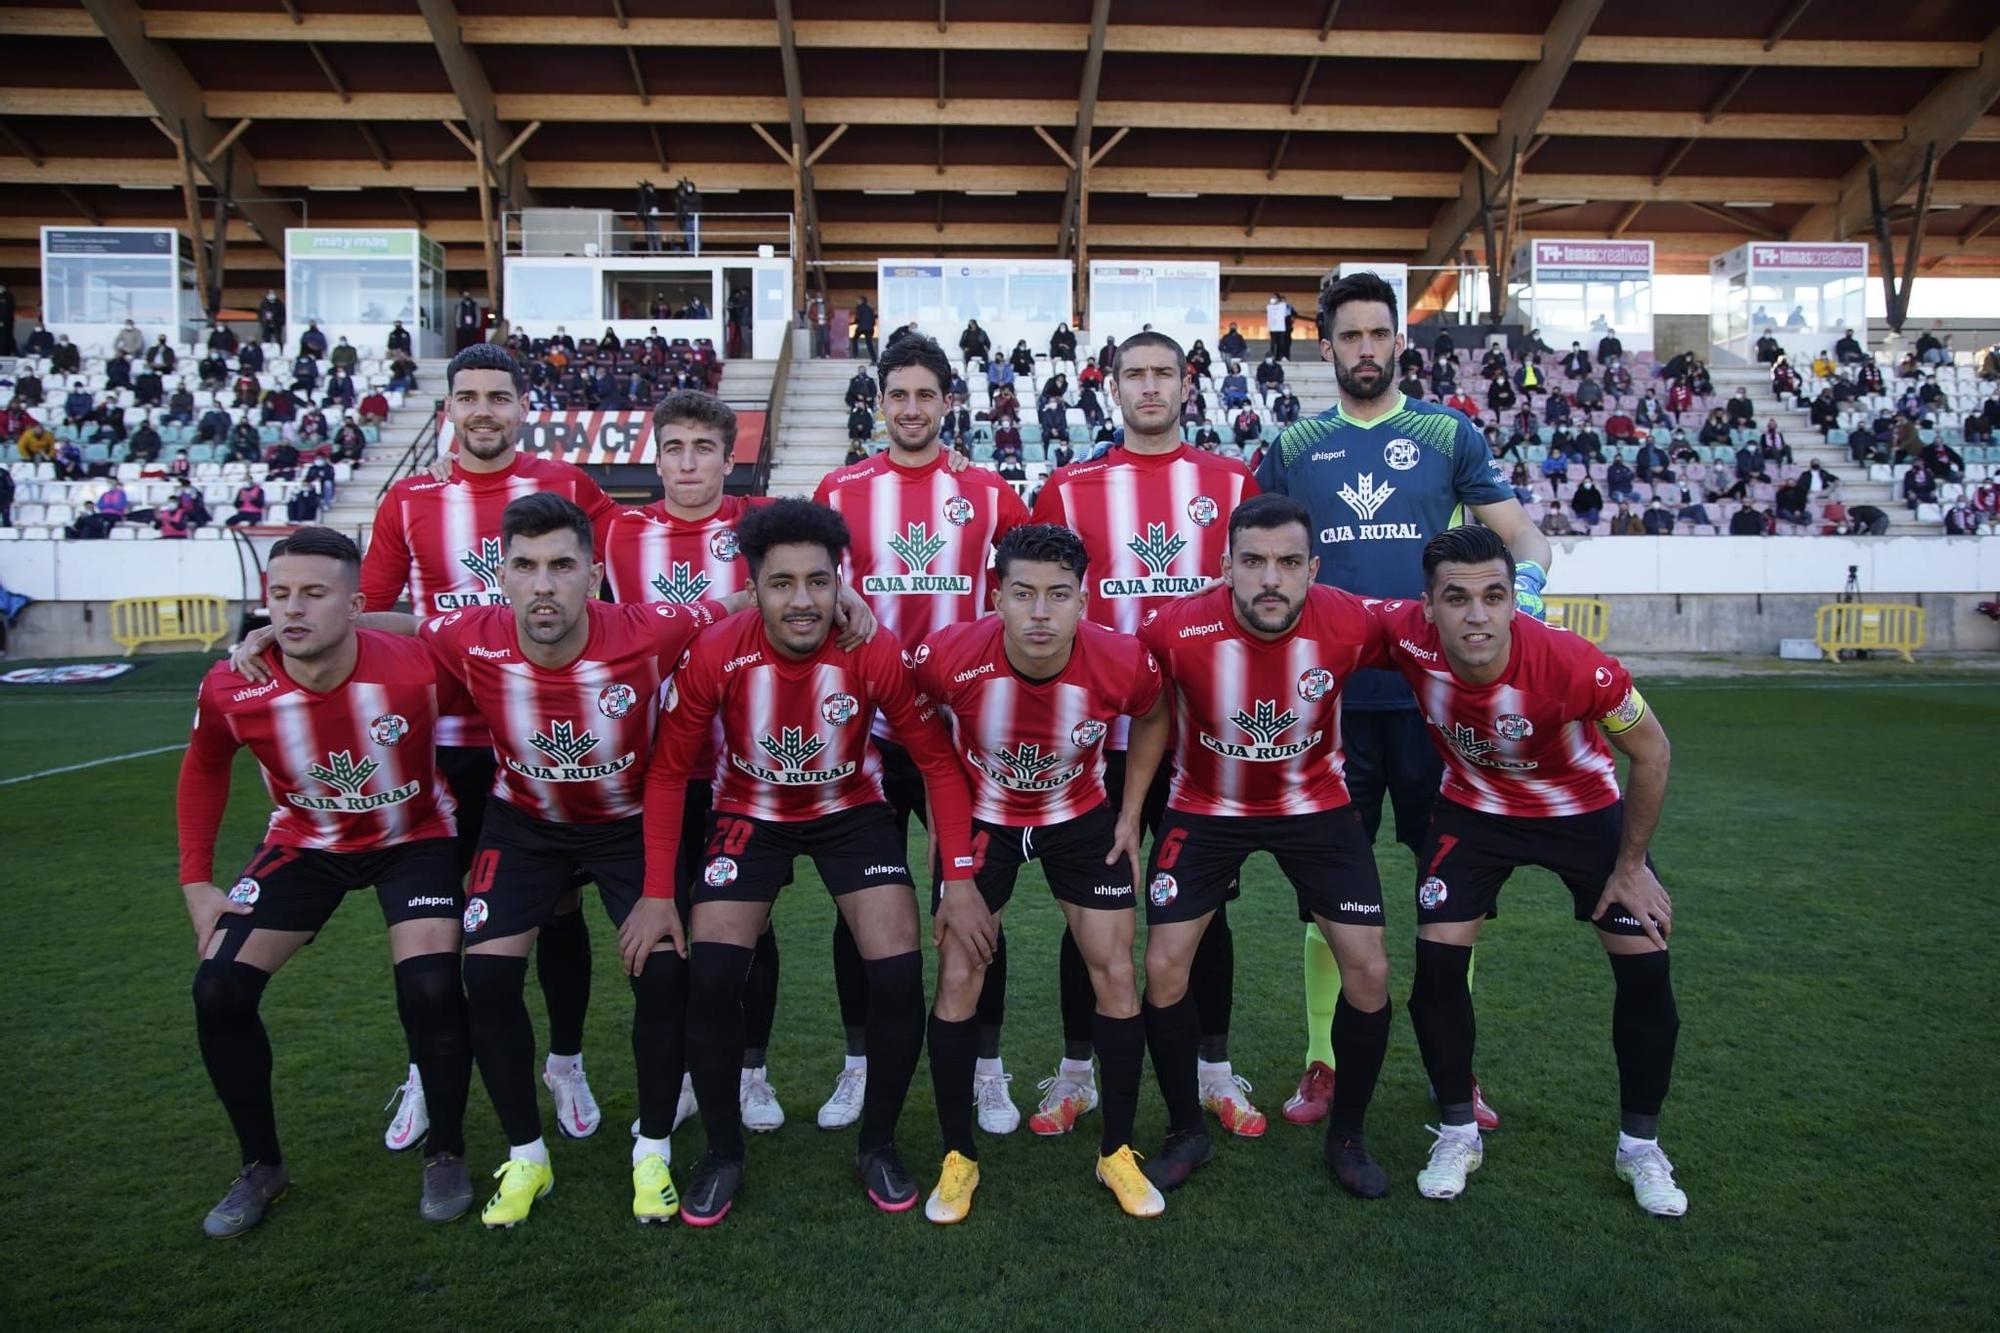 GALERÍA | Los mejores momentos del Zamora CF-Compostela